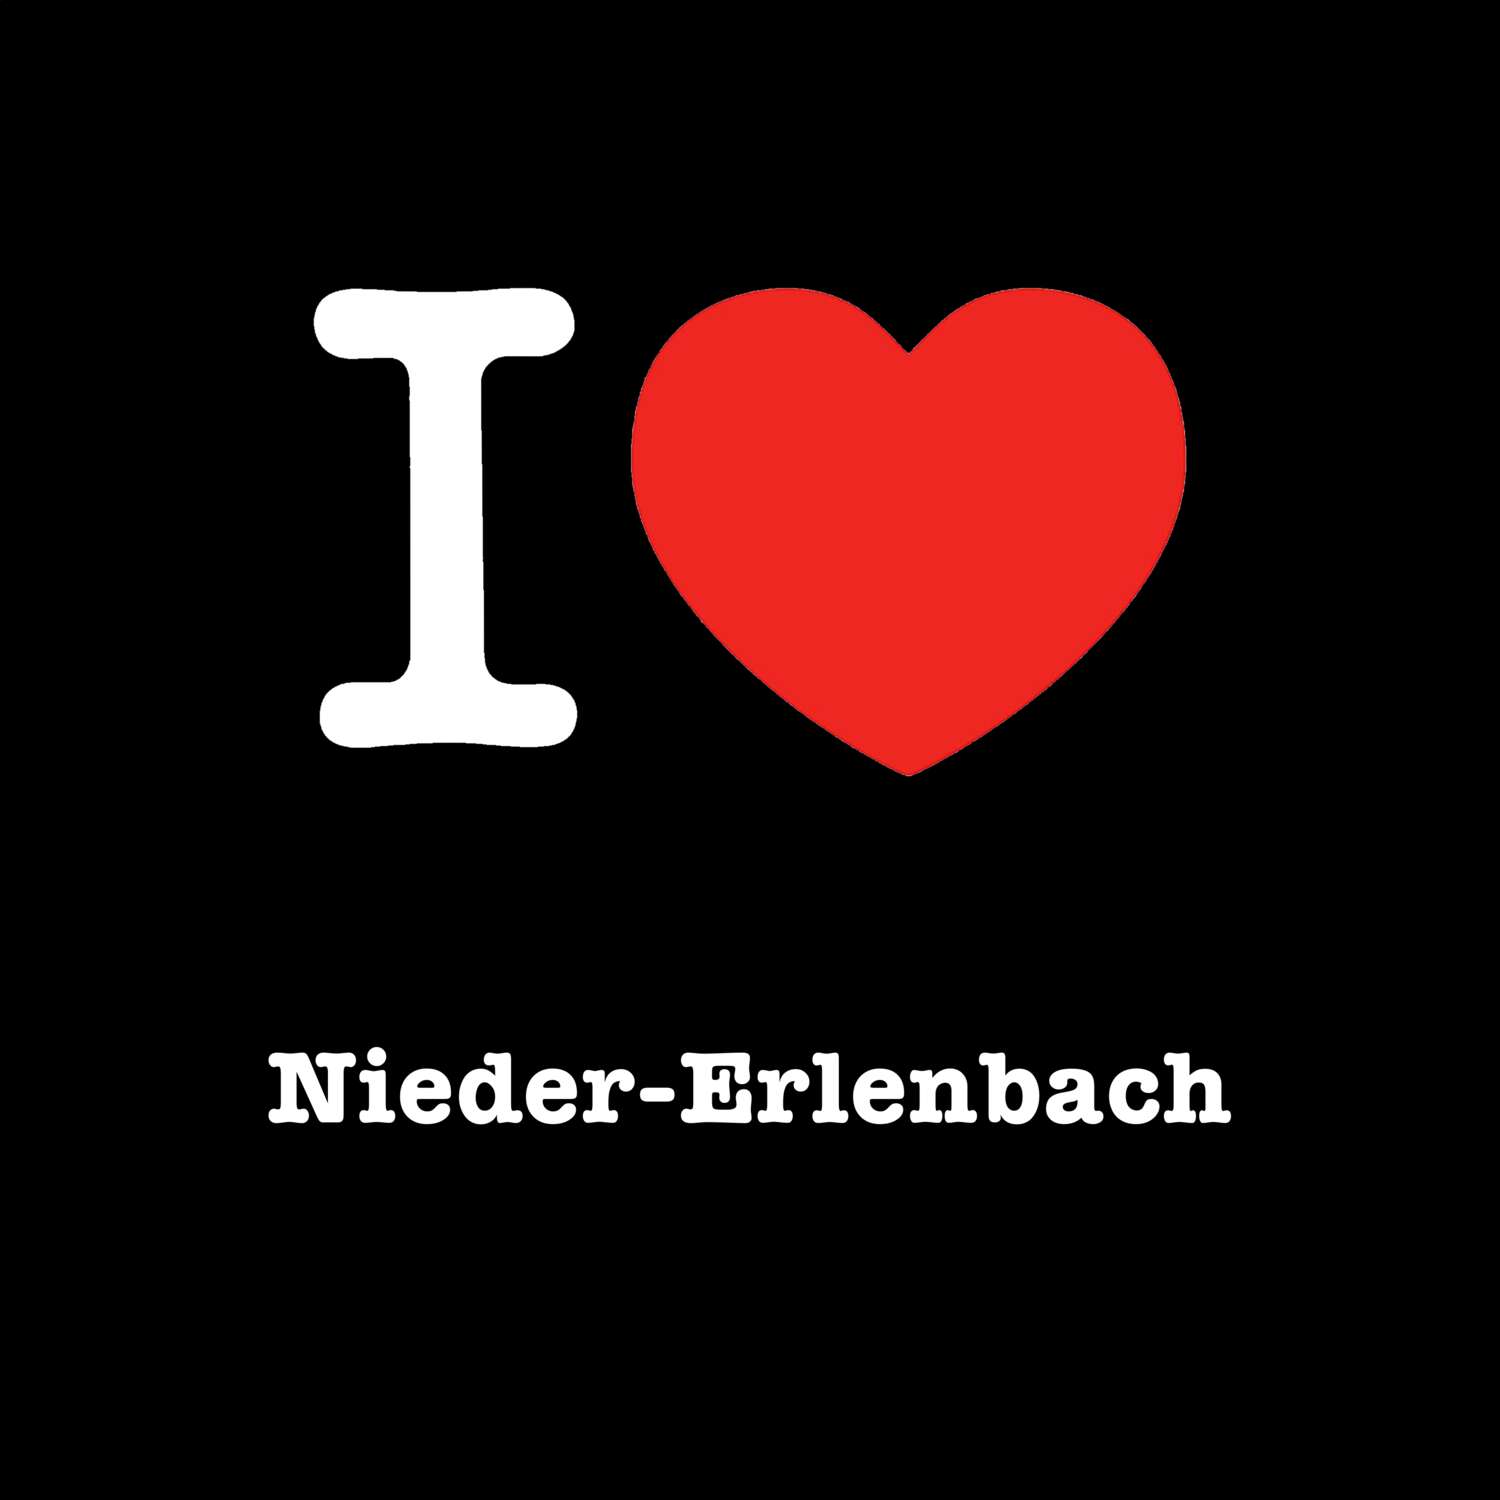 Nieder-Erlenbach T-Shirt »I love«